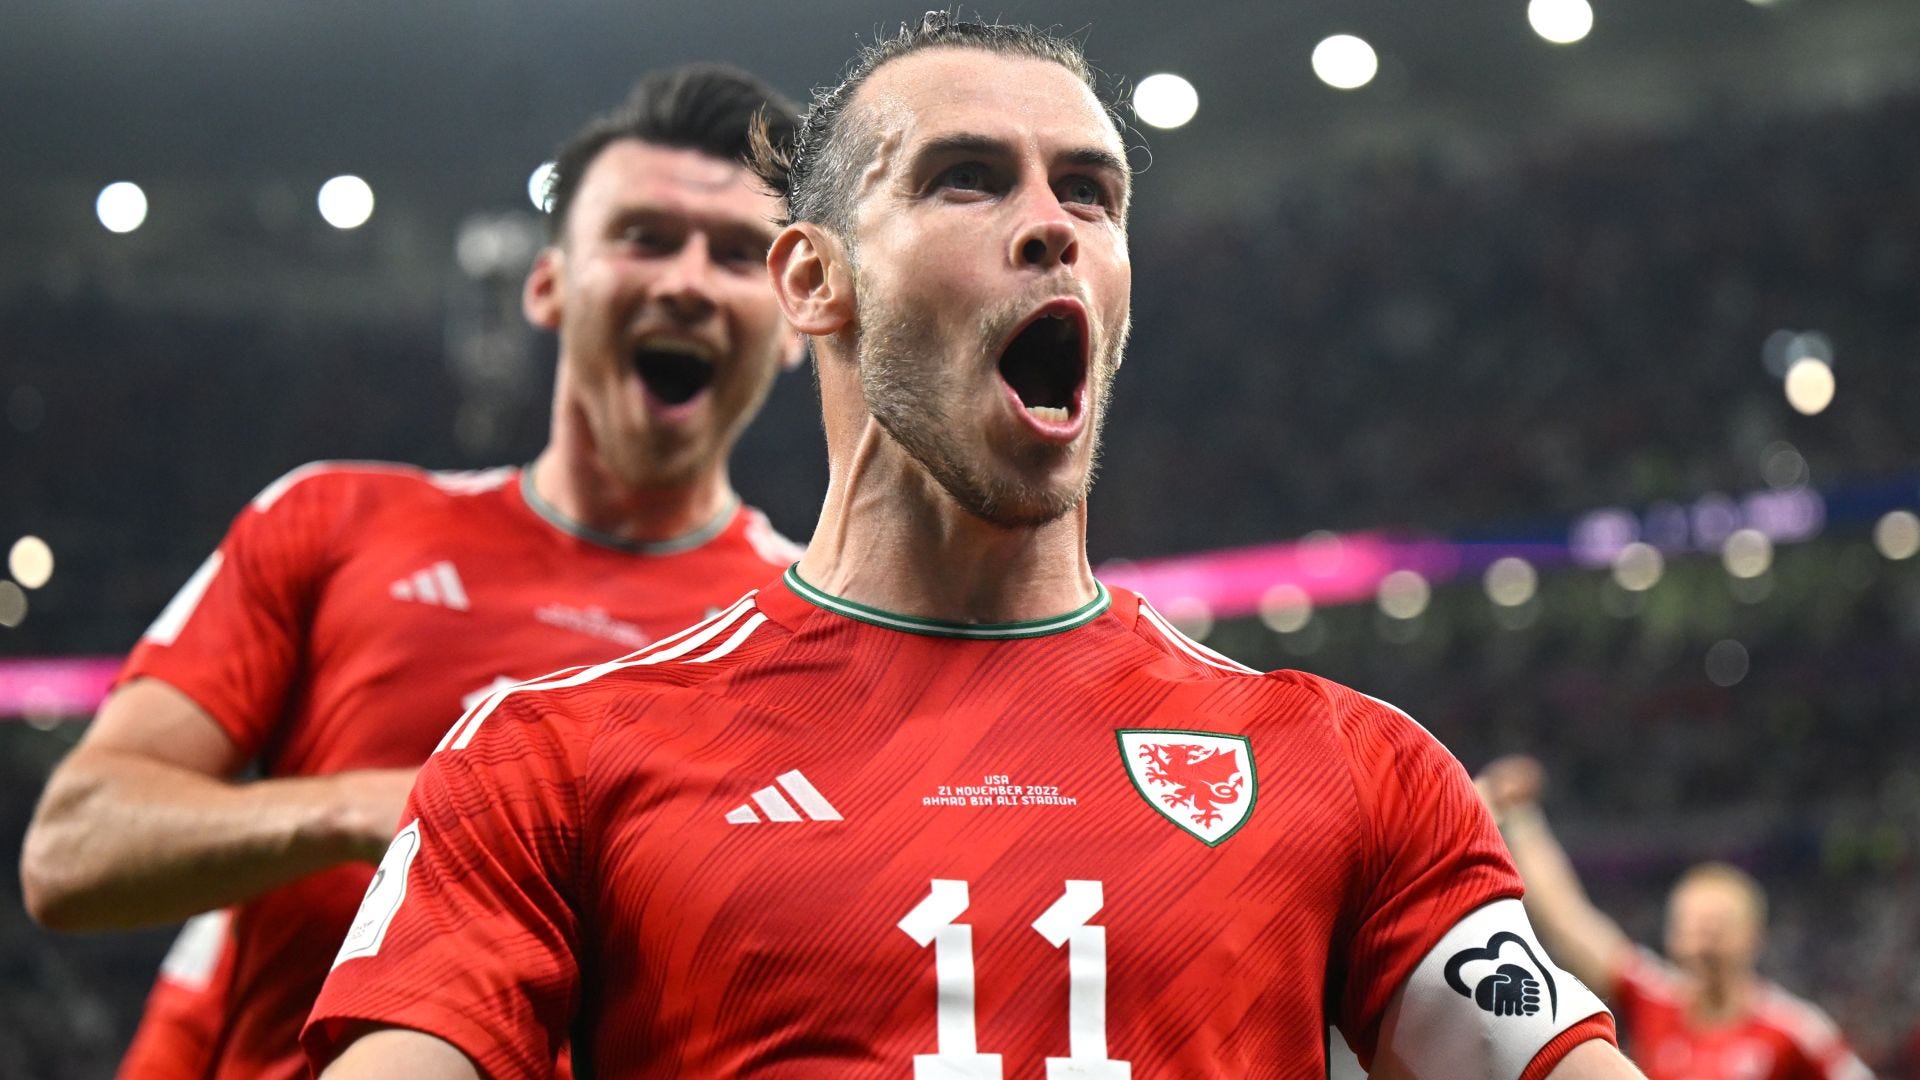 États-Unis - Pays de Galles (1-1) : Gareth Bale sauve son équipe les  Gallois | Goal.com Français